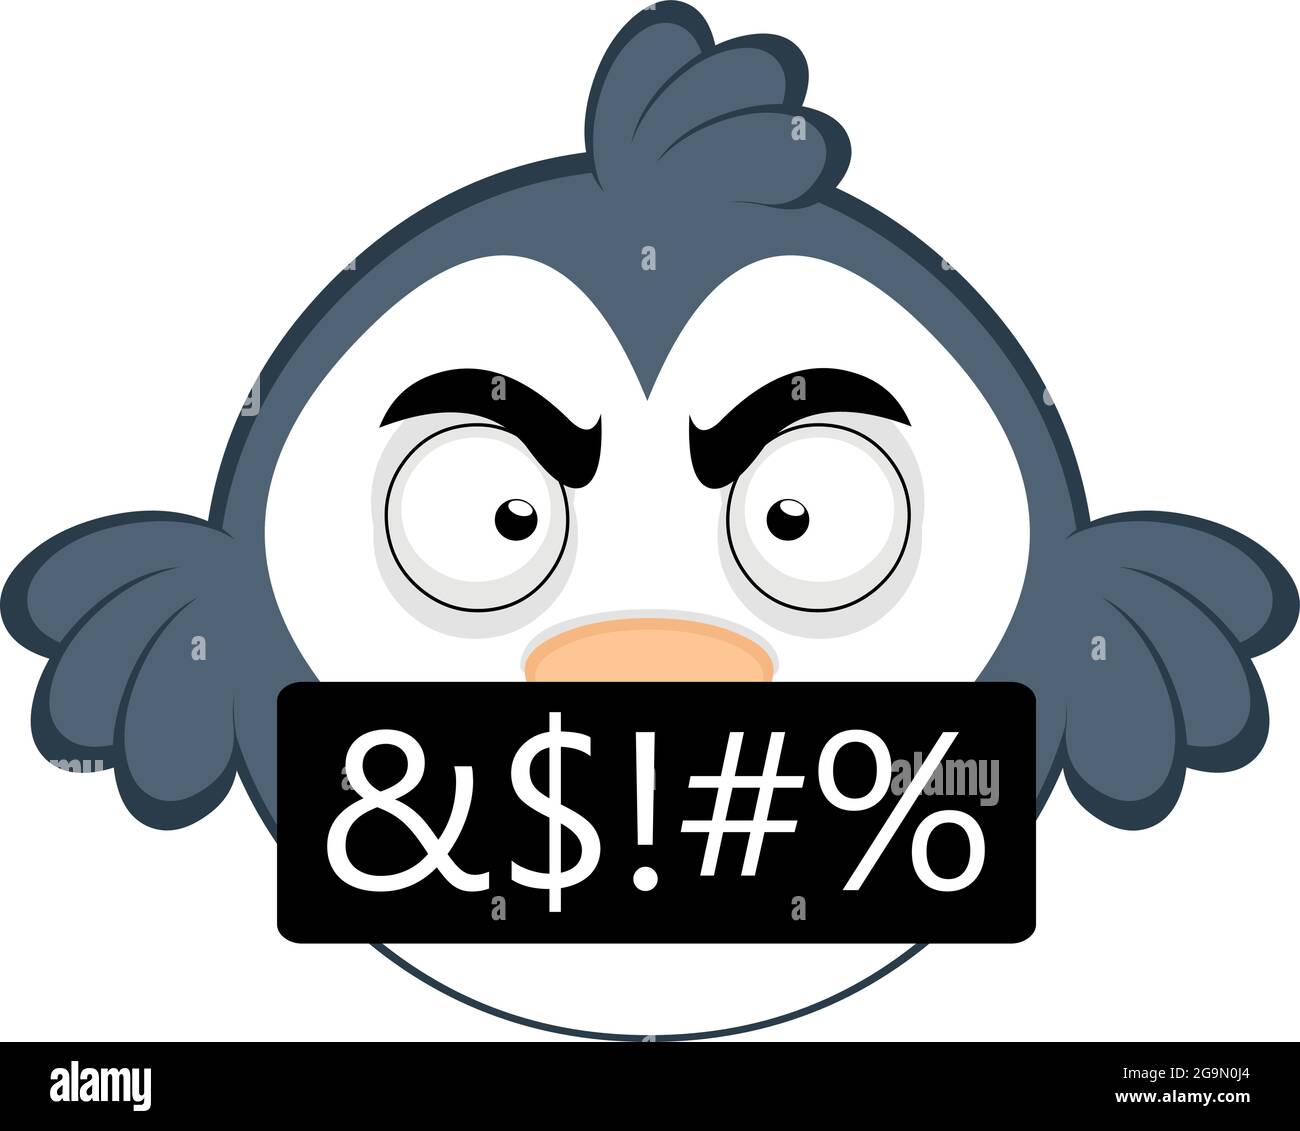 Vector emoticono ilustración de un pájaro de dibujos animados con una expresión enojada e insultante Ilustración del Vector